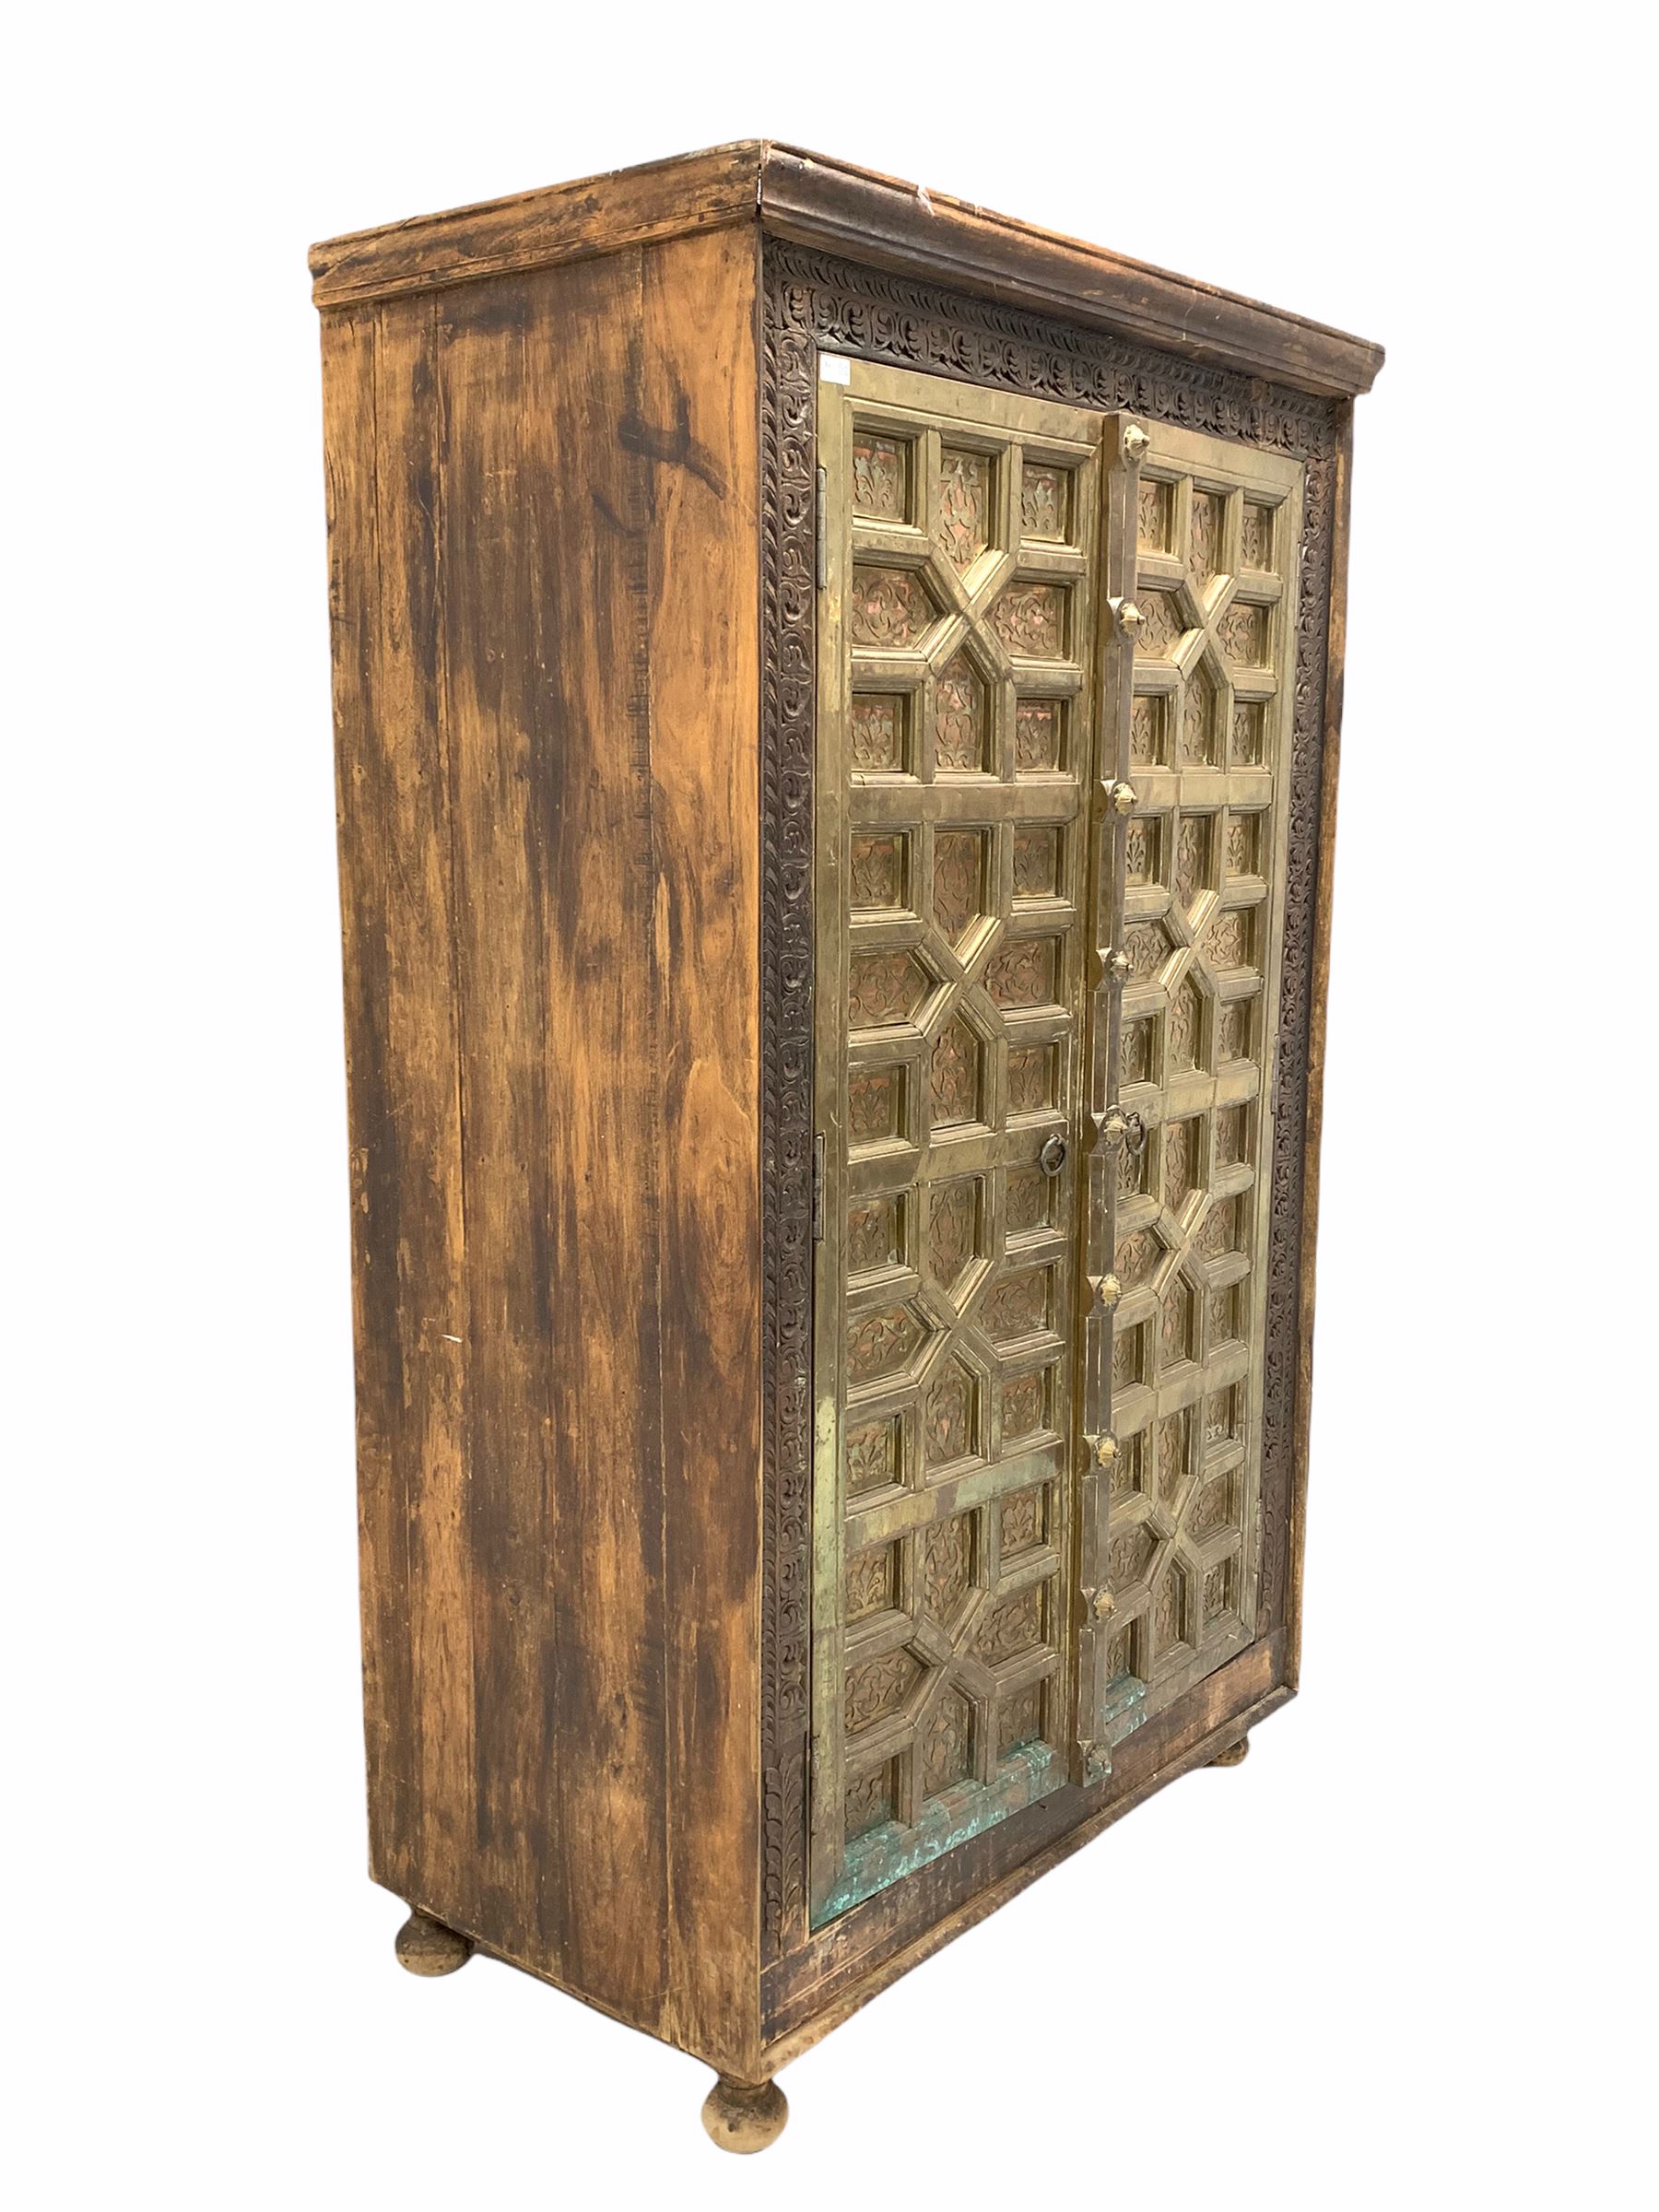 Indian hardwood cupboard - Image 2 of 4